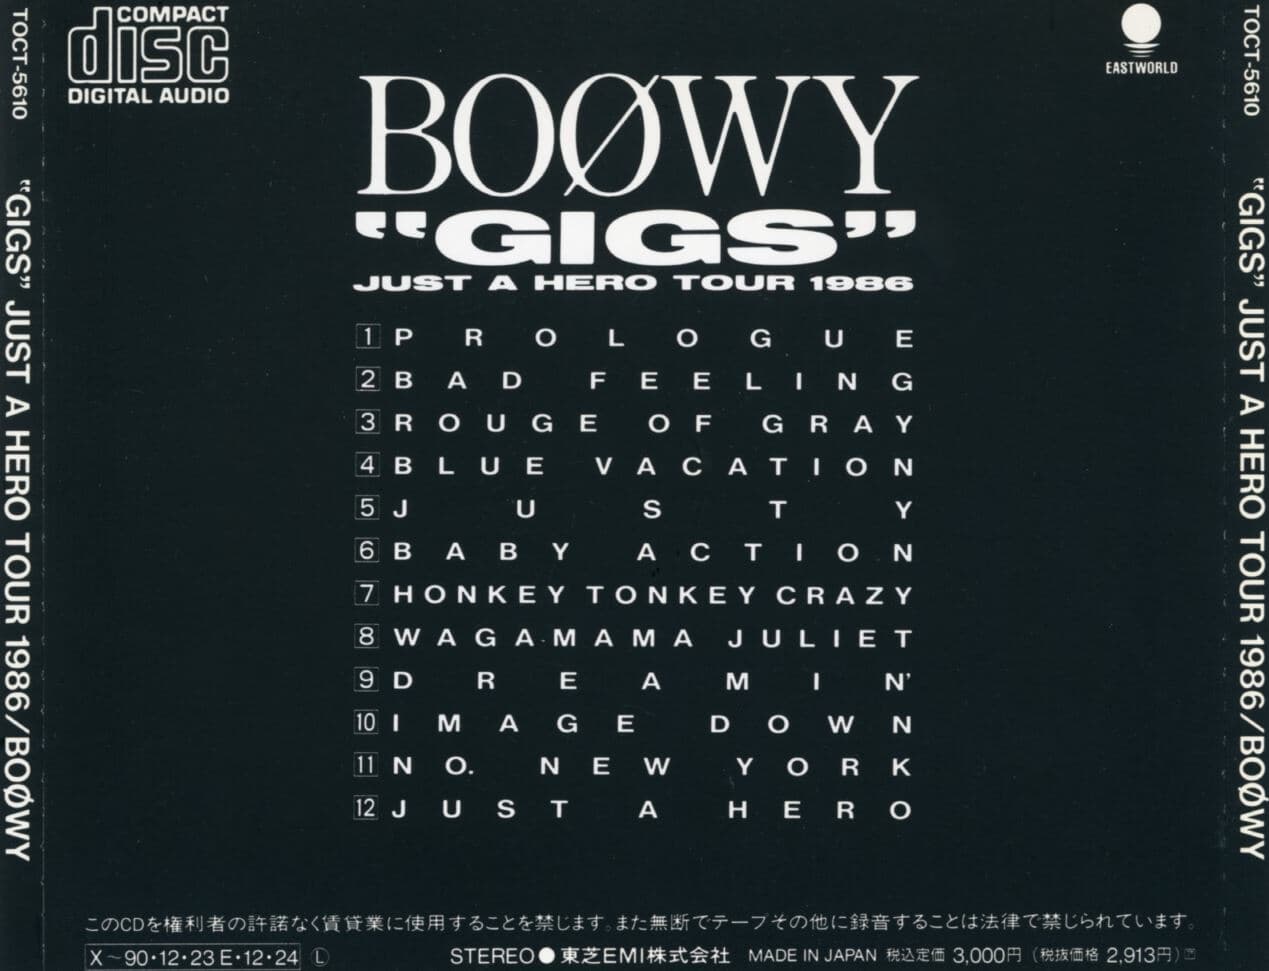 보위 - Boowy - "GIGS" Just A Hero Tour 1986 [일본발매]